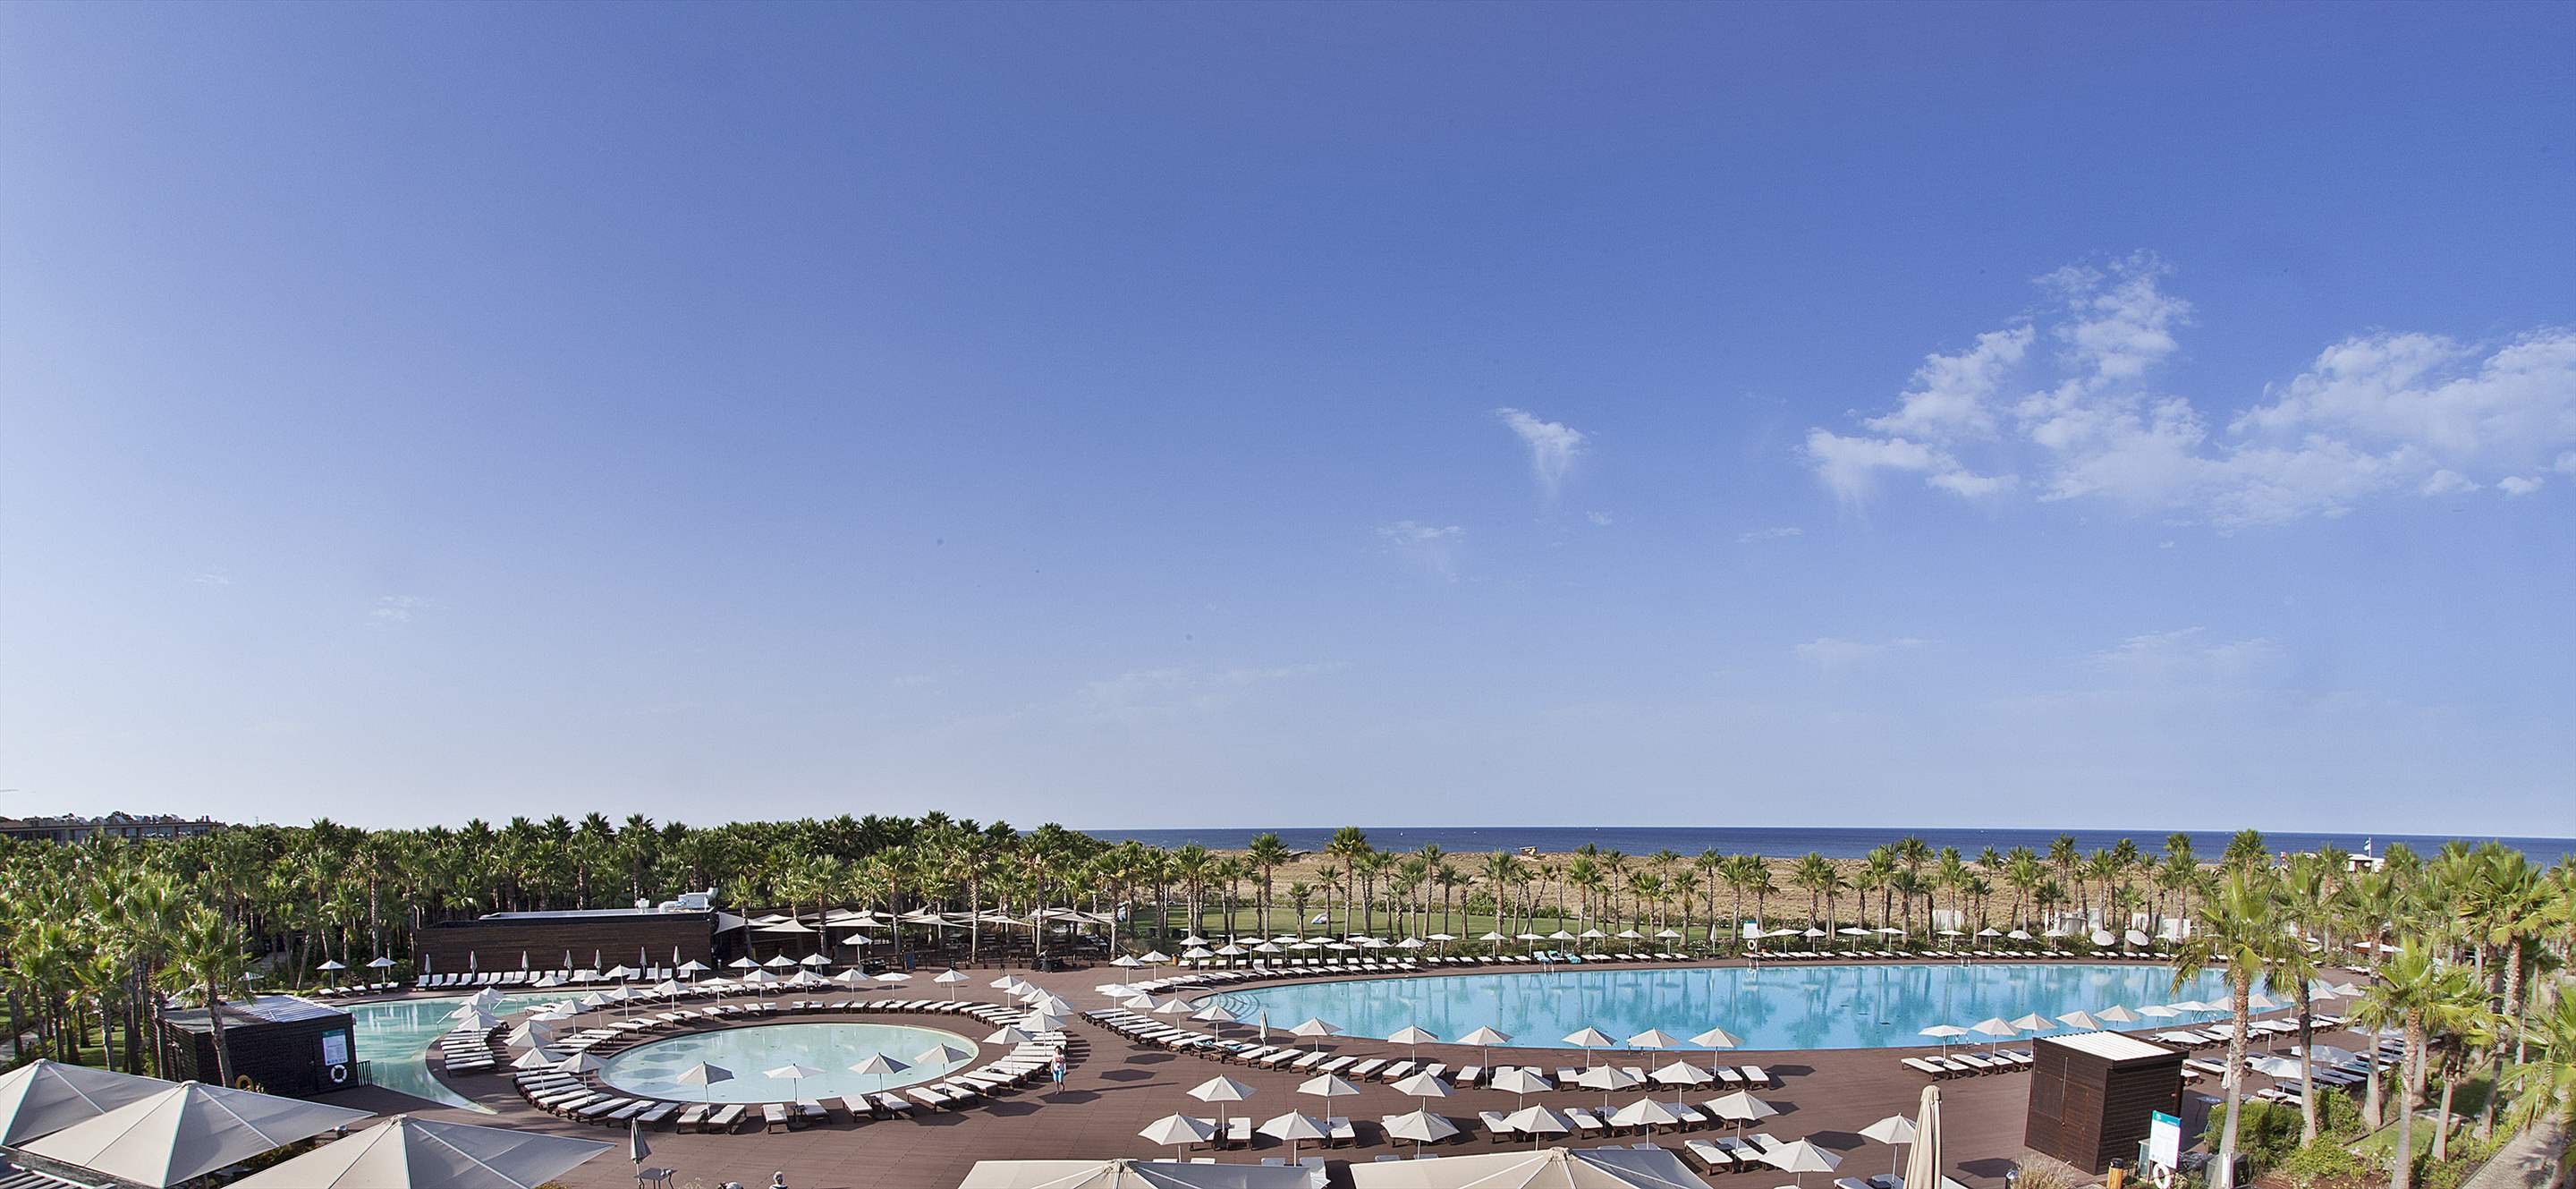 Vidamar Hotel Superior Ocean View Room, HB, Double Room, 1 bedroom hotel in Vidamar Resort, Algarve Photo #32